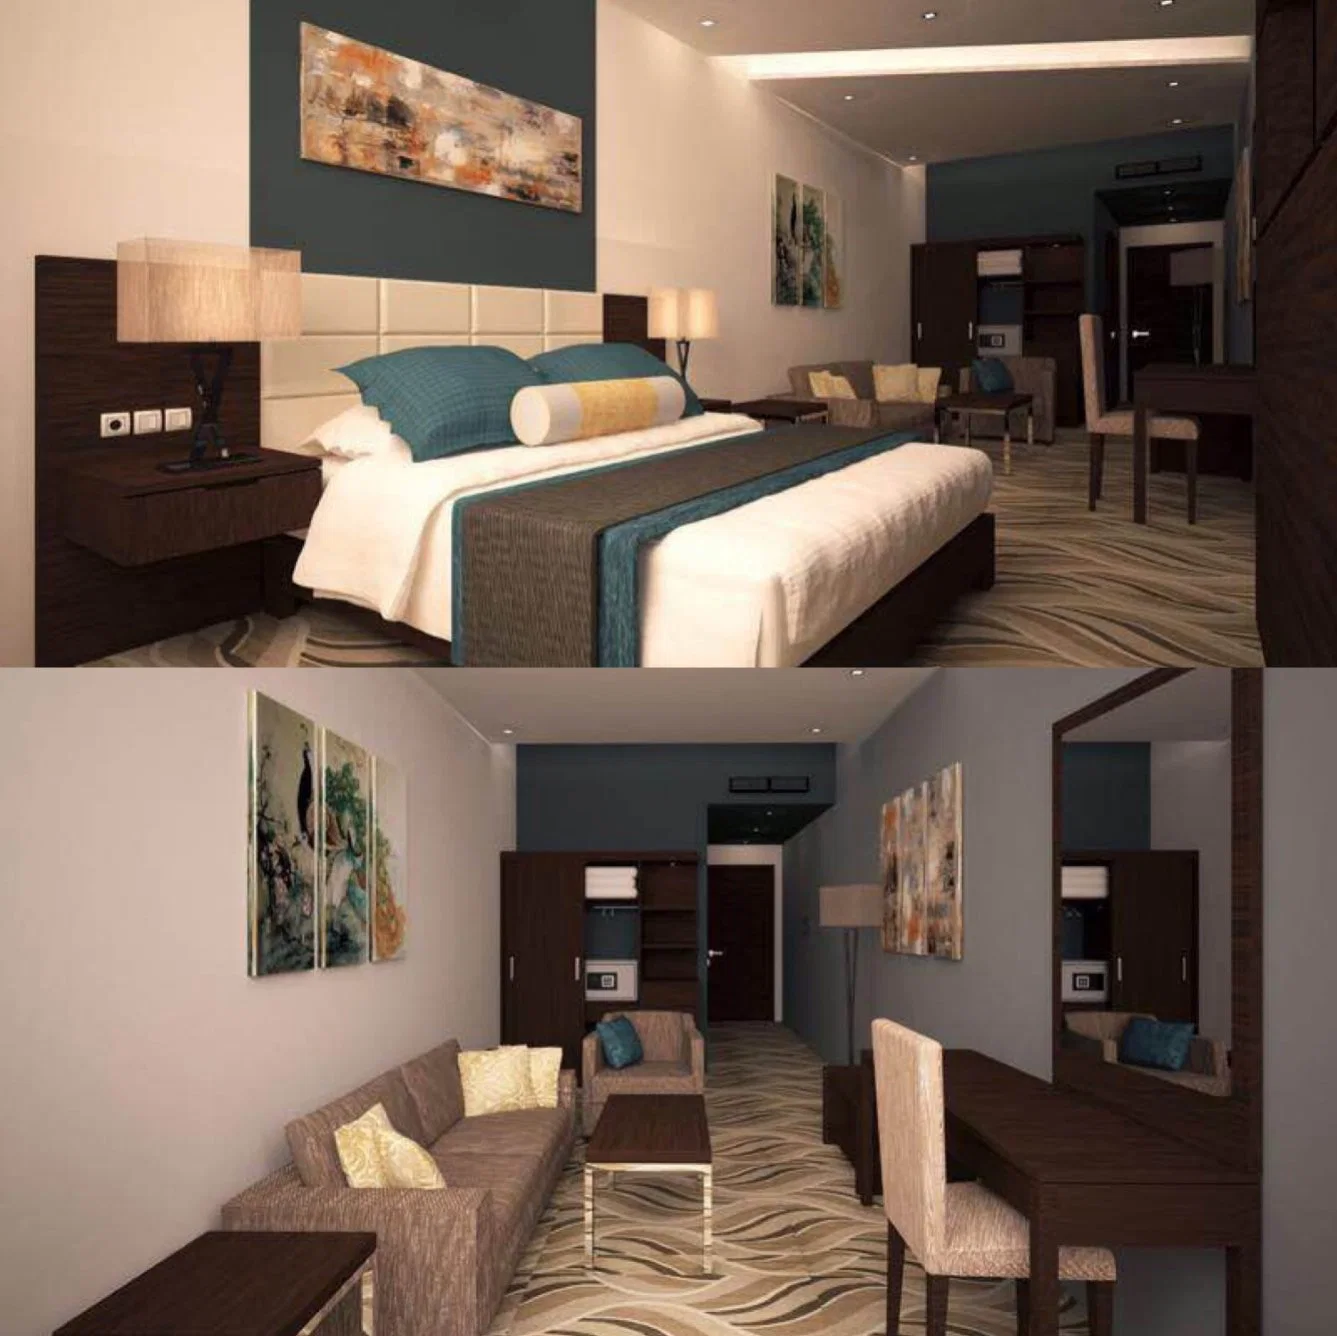 Personalización 5 estrellas Diseño moderno de lujo dormitorio de madera tamaño king Mobiliario y Mobiliario de Casa de la Villa